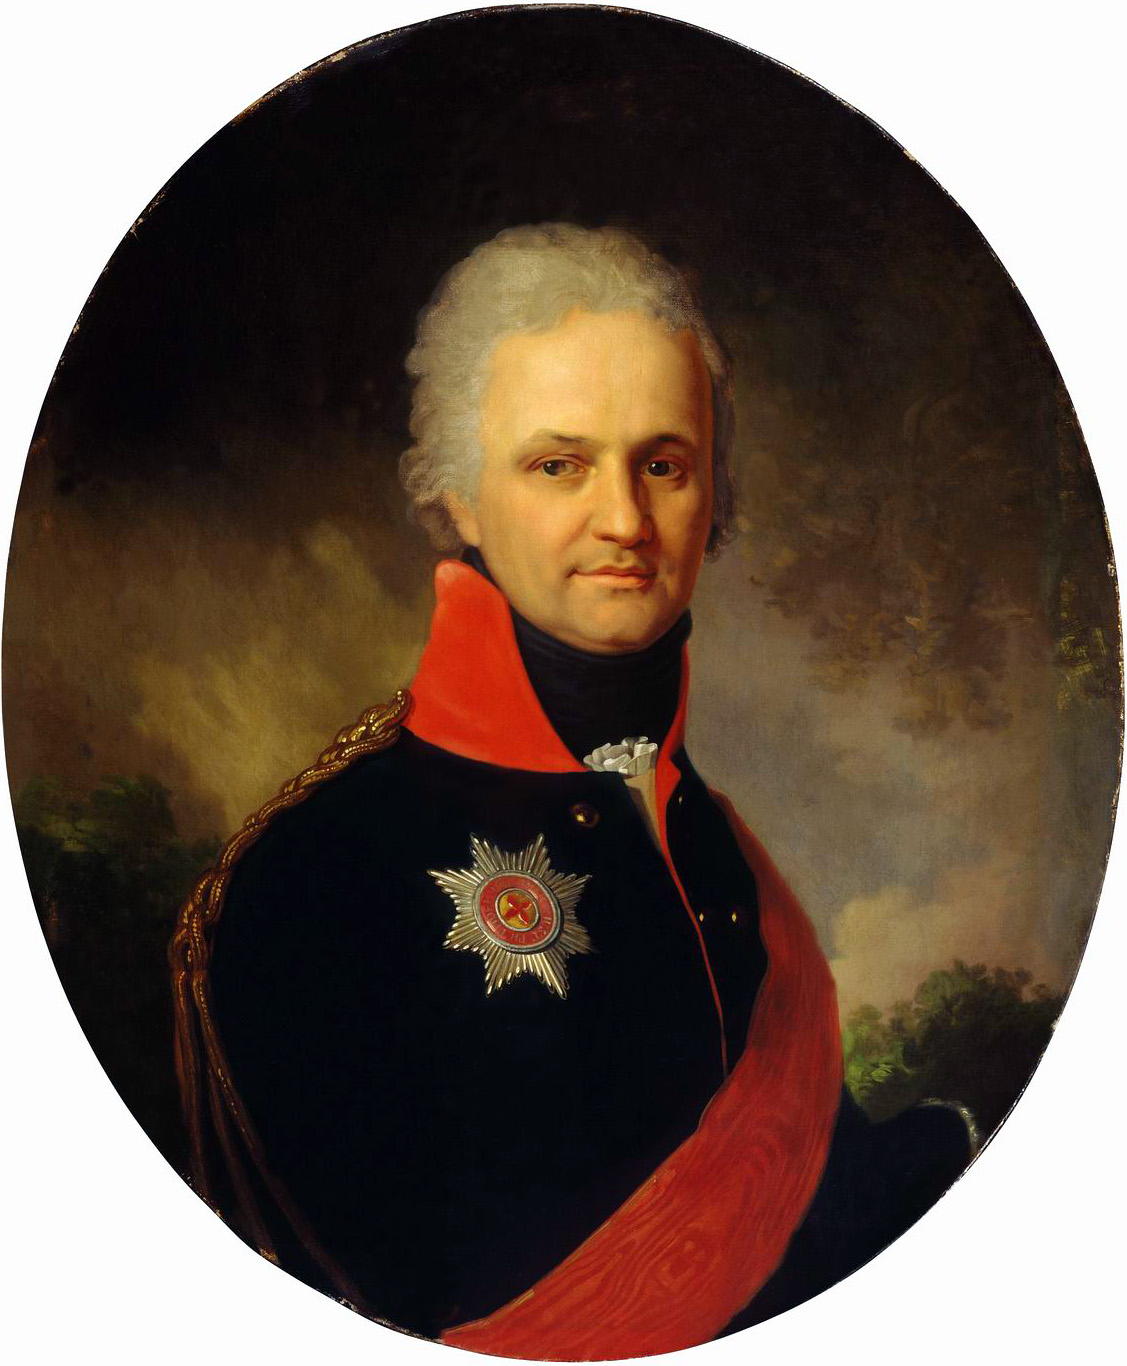 Боровиковский. Портрет неизвестного генерала из семьи Бенкендорф. Середина 1800-х